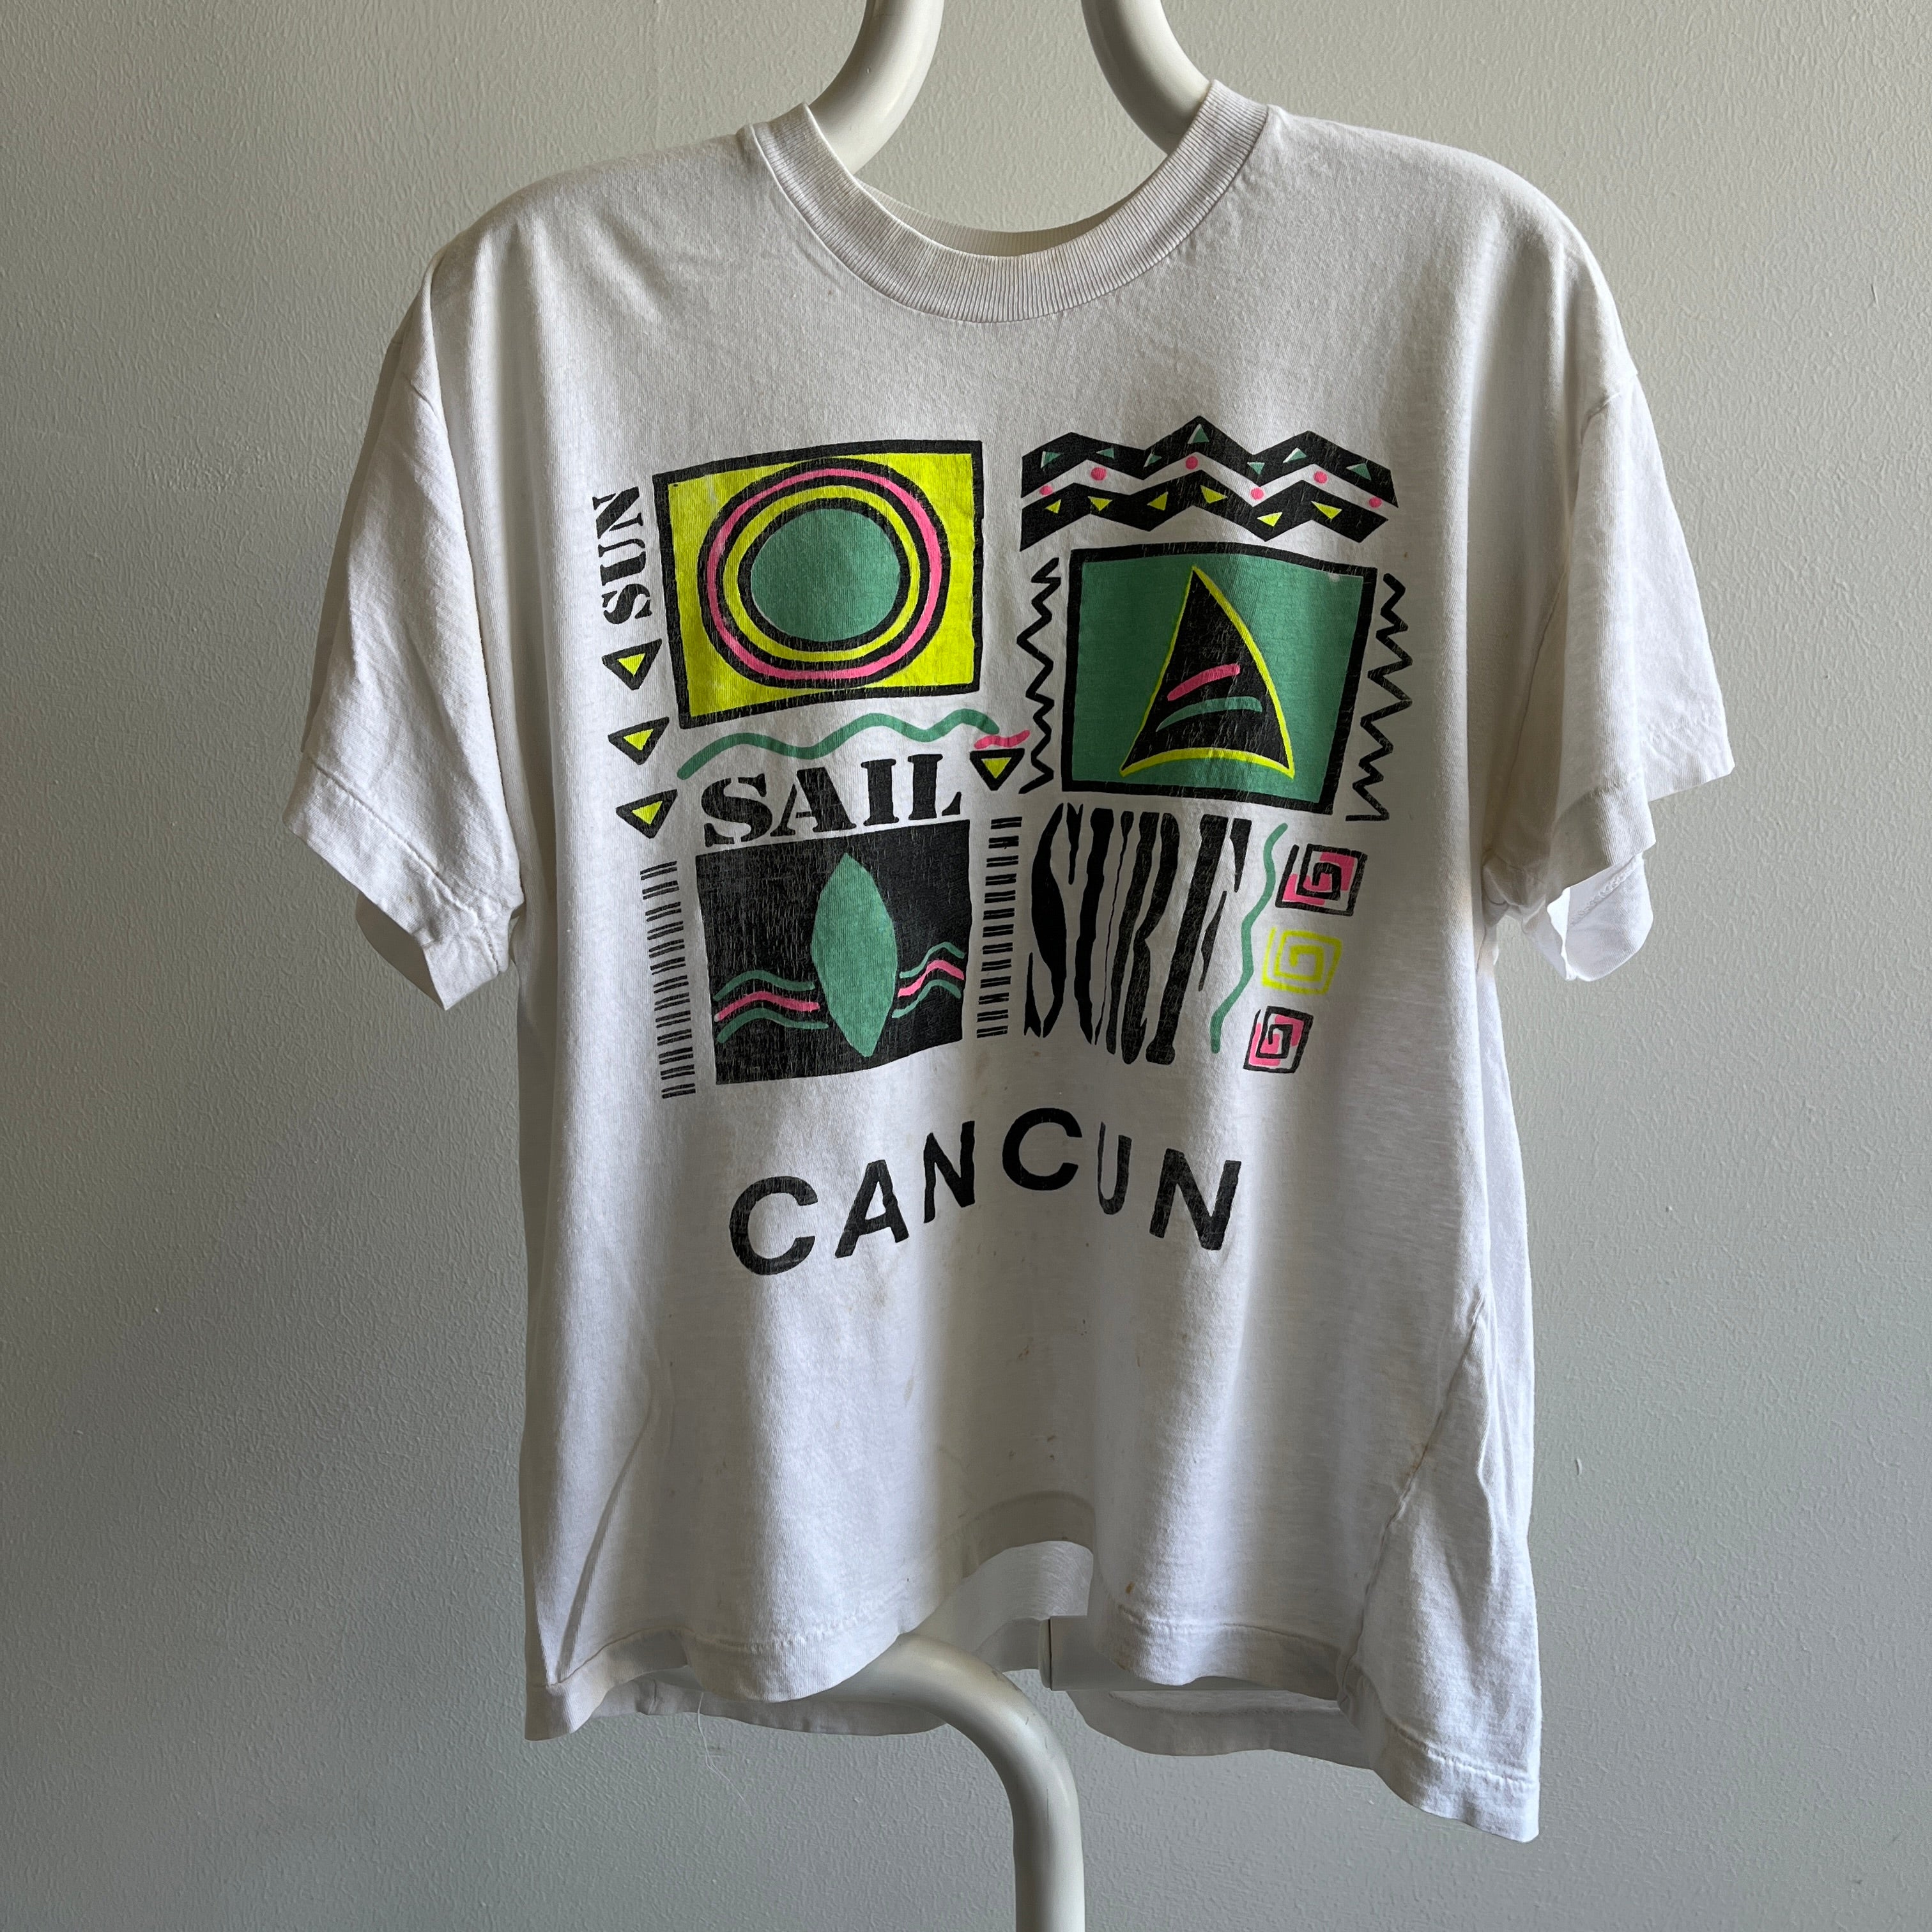 T-shirt touristique doux et souple Cancun des années 1980